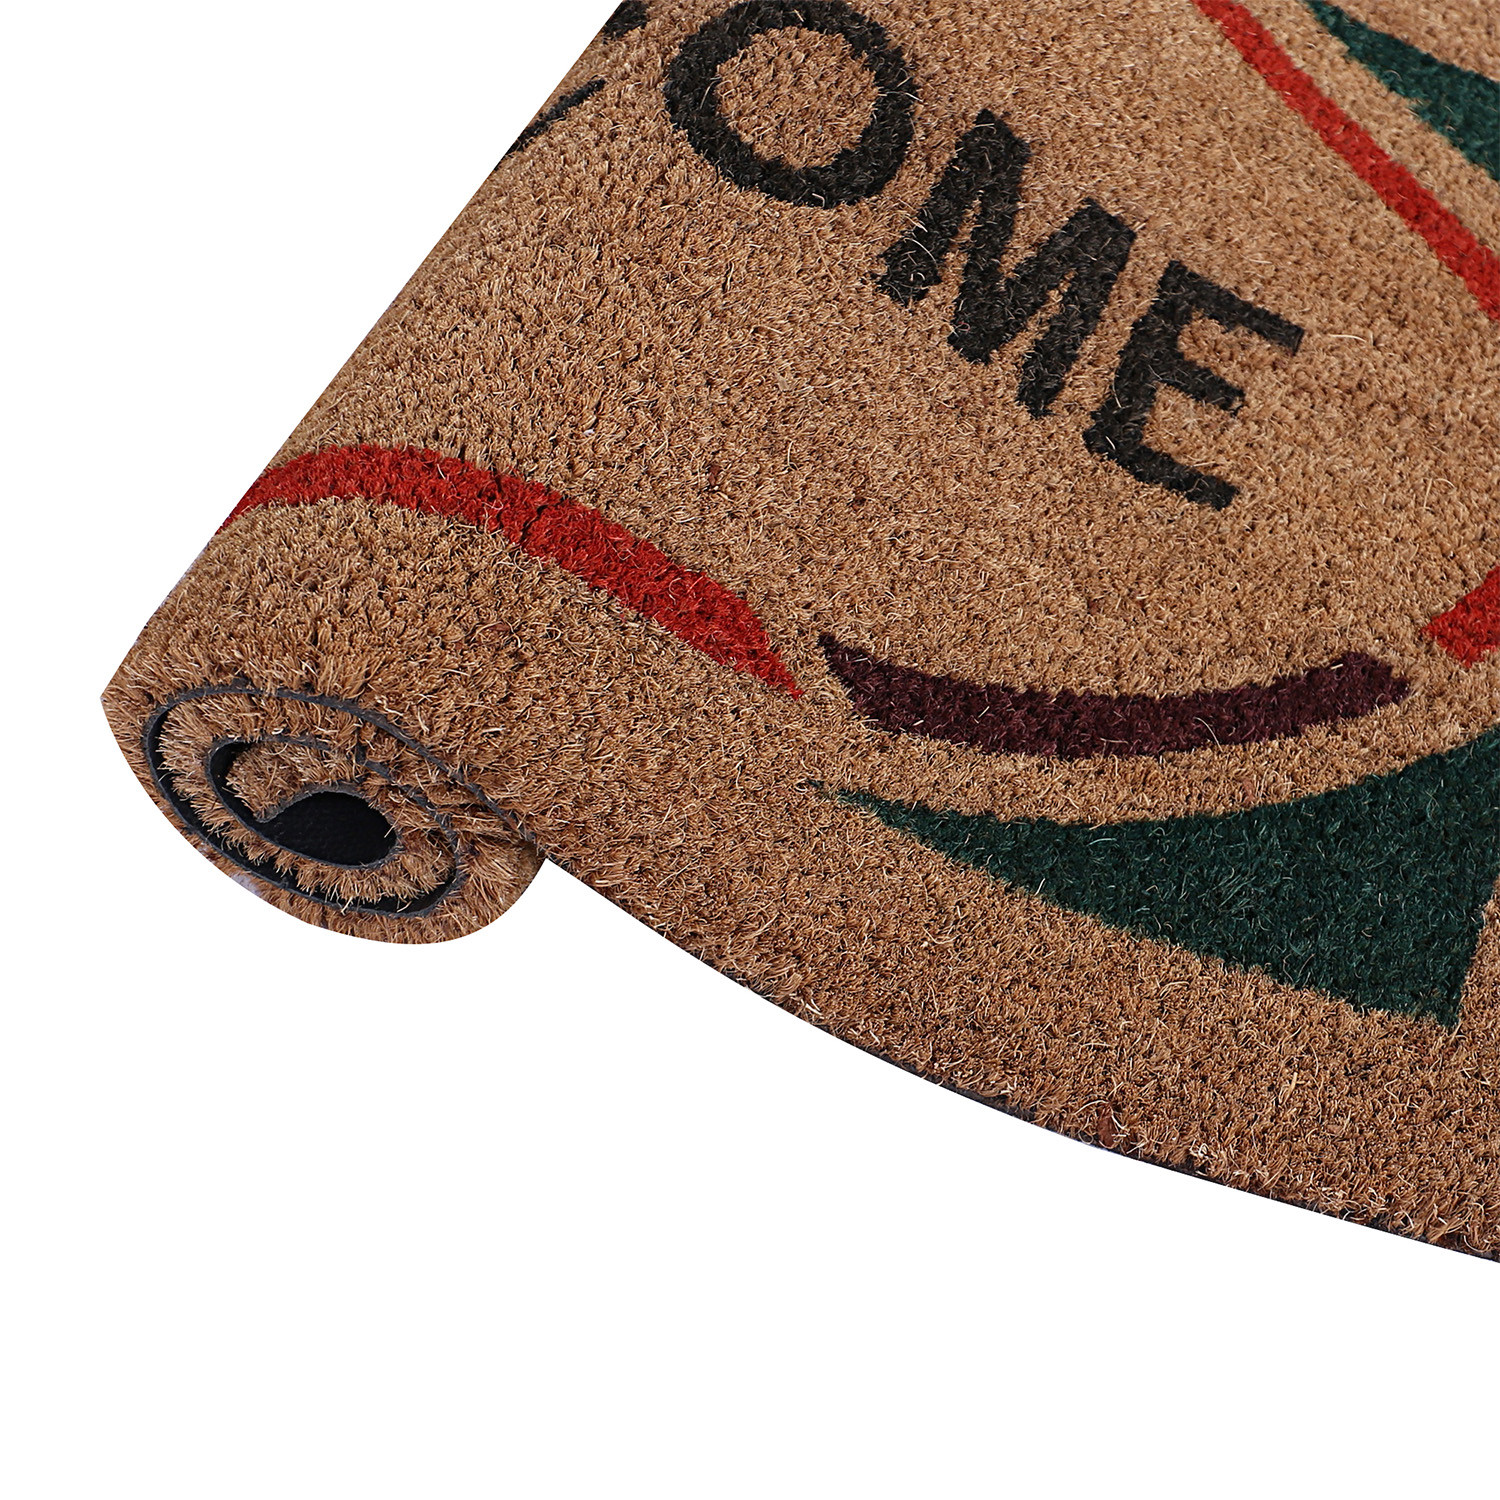 Kuber Industries Door Mat|Polyethylene Durable & Anti-Slip Natural Oval Welcome Print Floor Mat|Rug For Indoor or Outdoor, 30x20 Inch (Brown)